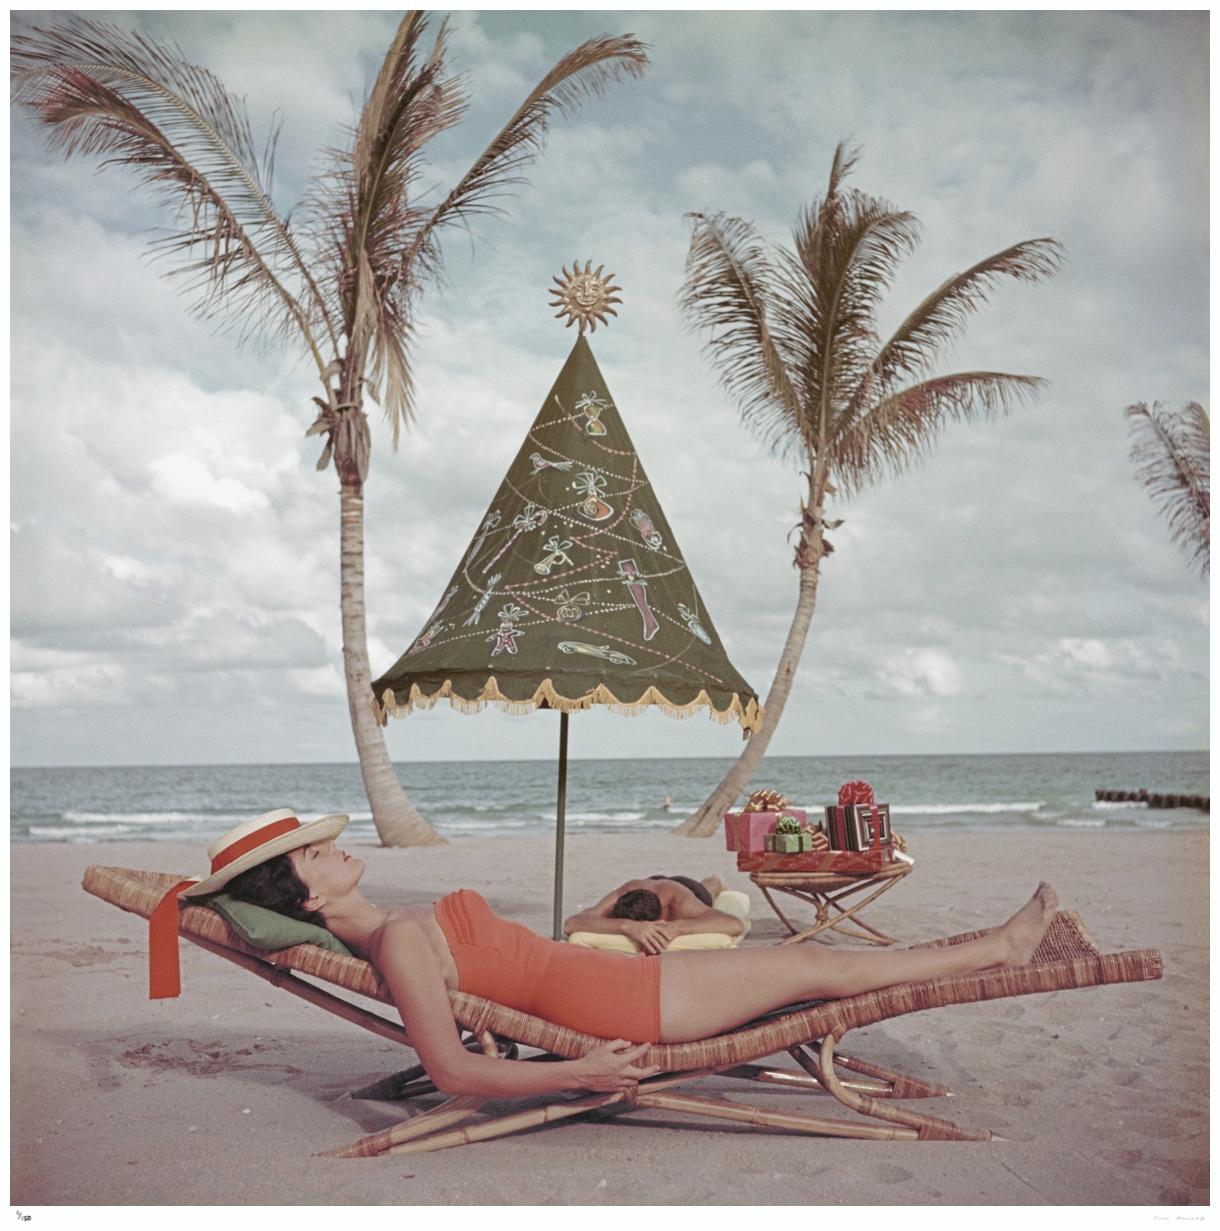 Slim Aarons 'Palm Beach Idyll' Edition estampillée Estate Stamped 
Un couple prend un bain de soleil au bord de la mer à Palm Beach Florida 1955 USA (Photo de Slim Aarons). 
Cette photographie incarne le style de voyage et le glamour des personnes